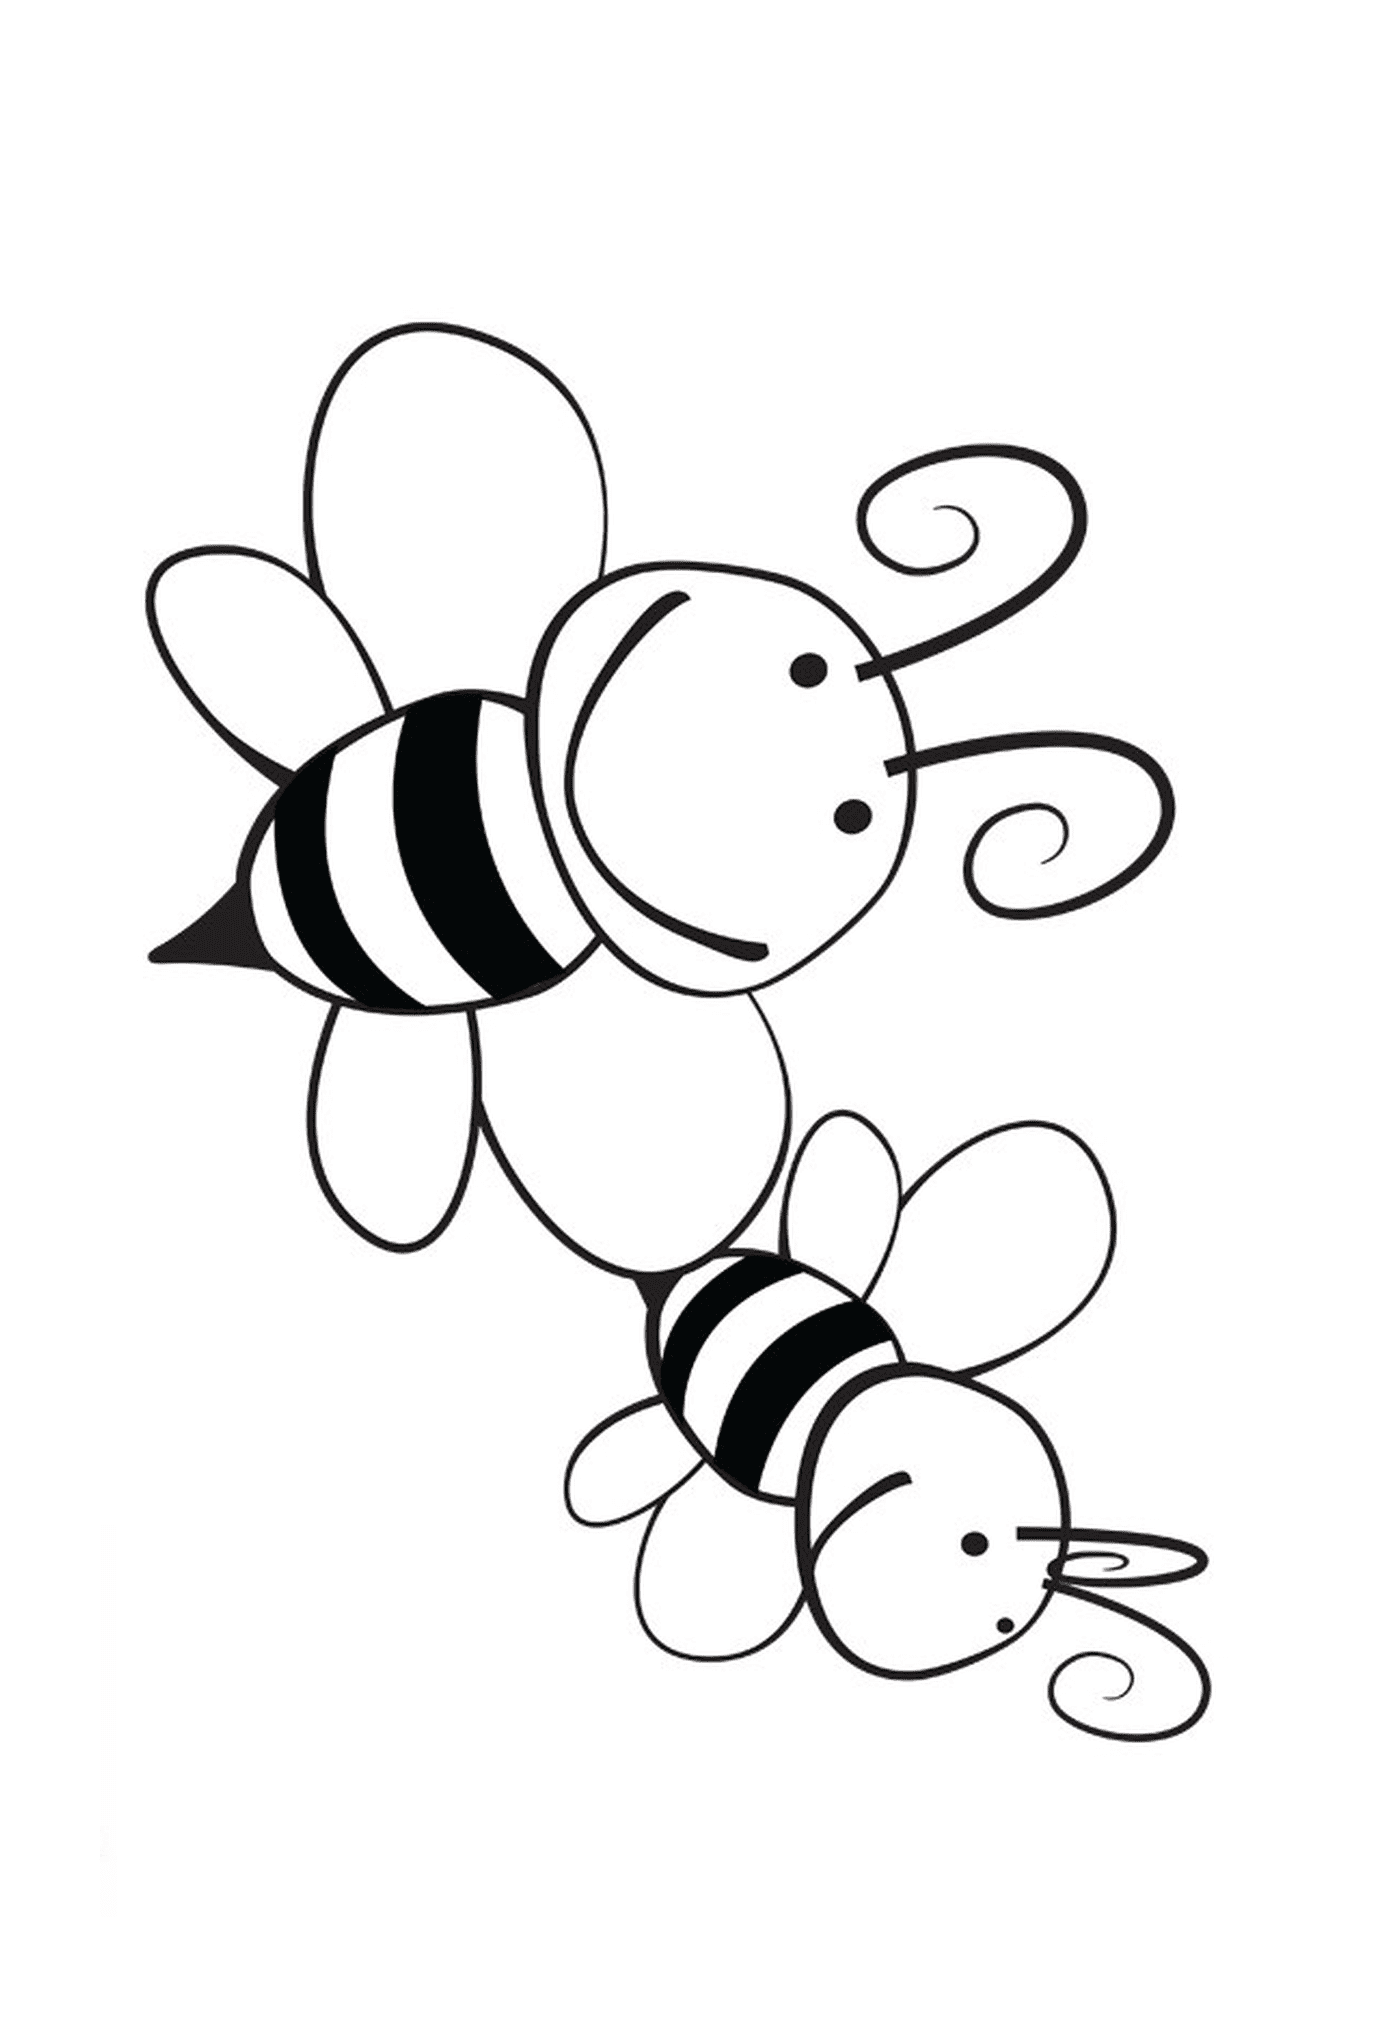  两个微笑的蜜蜂在一起 